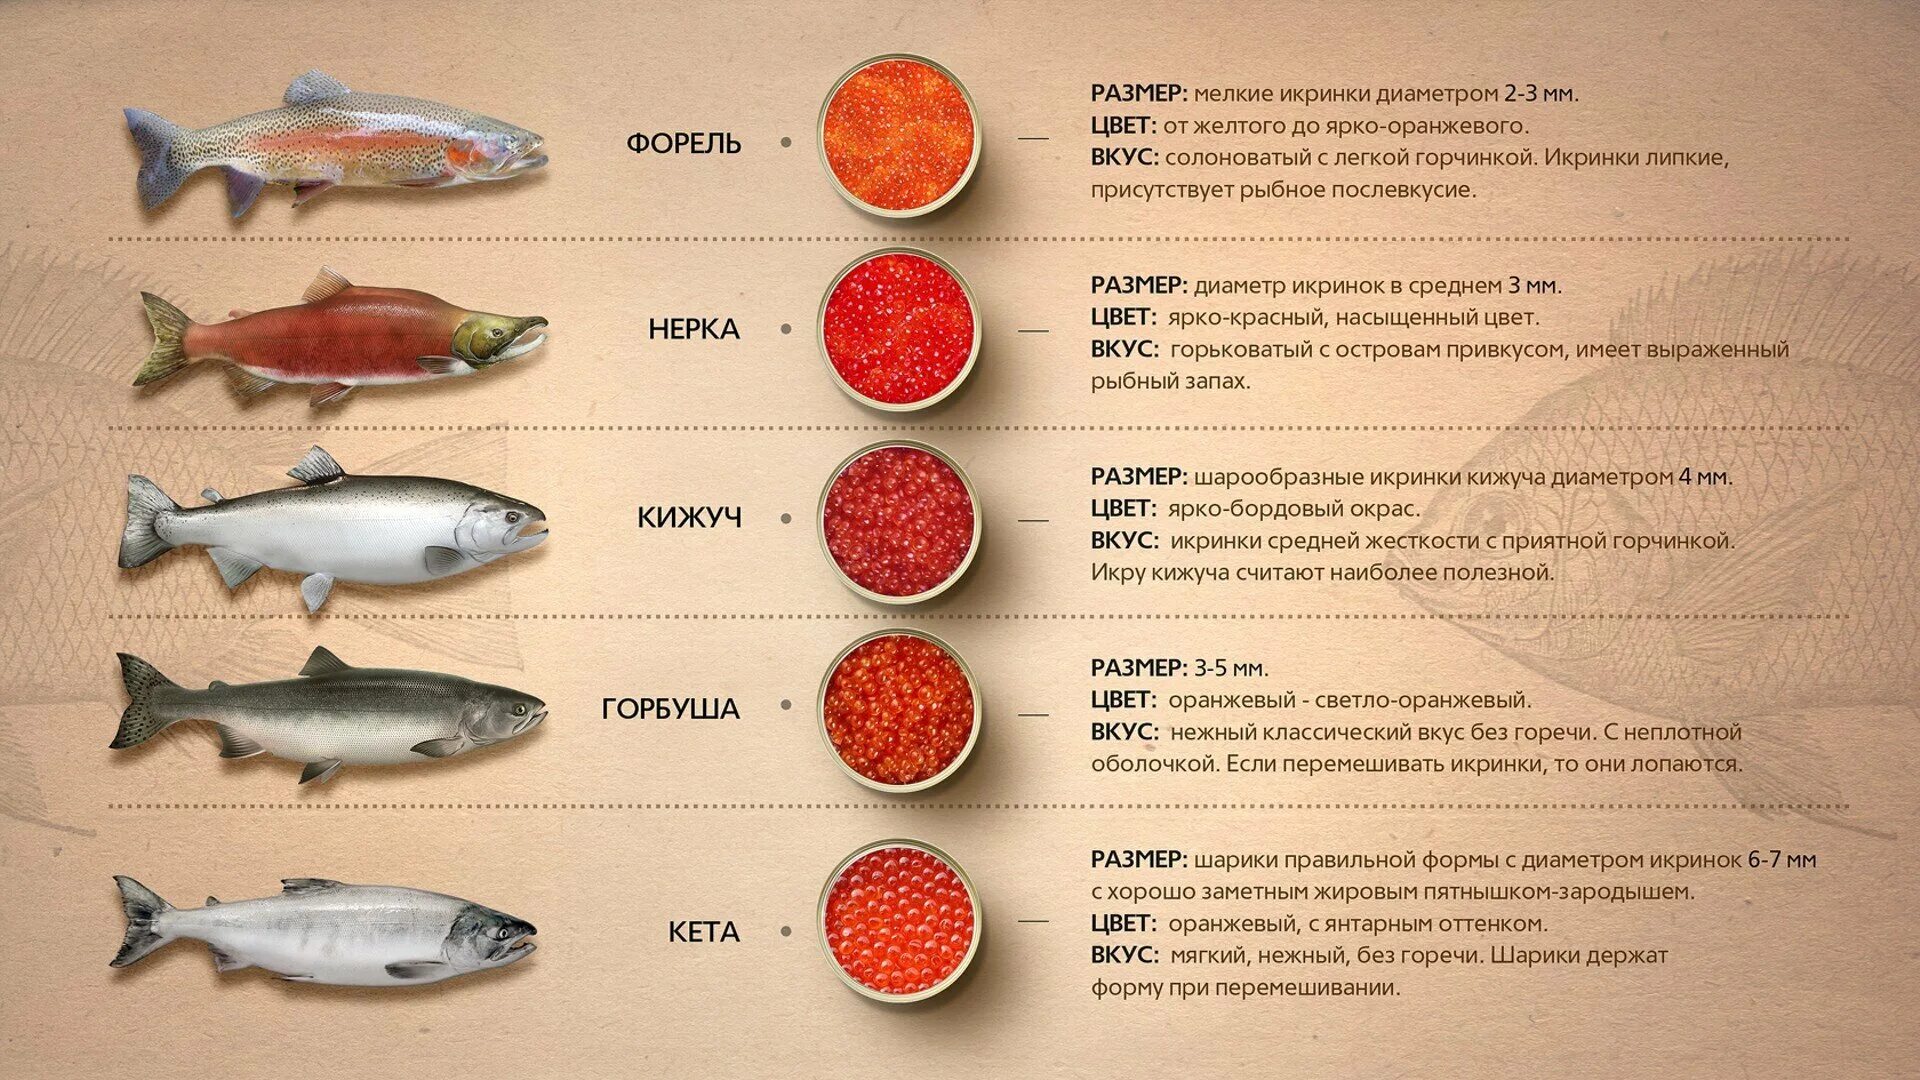 Лососевые рыбы по ценности. Рыбы семейства лососевых названия. Красная рыба виды названия. Размер икры лососевых рыб. Диаметр икринок лососевых рыб.